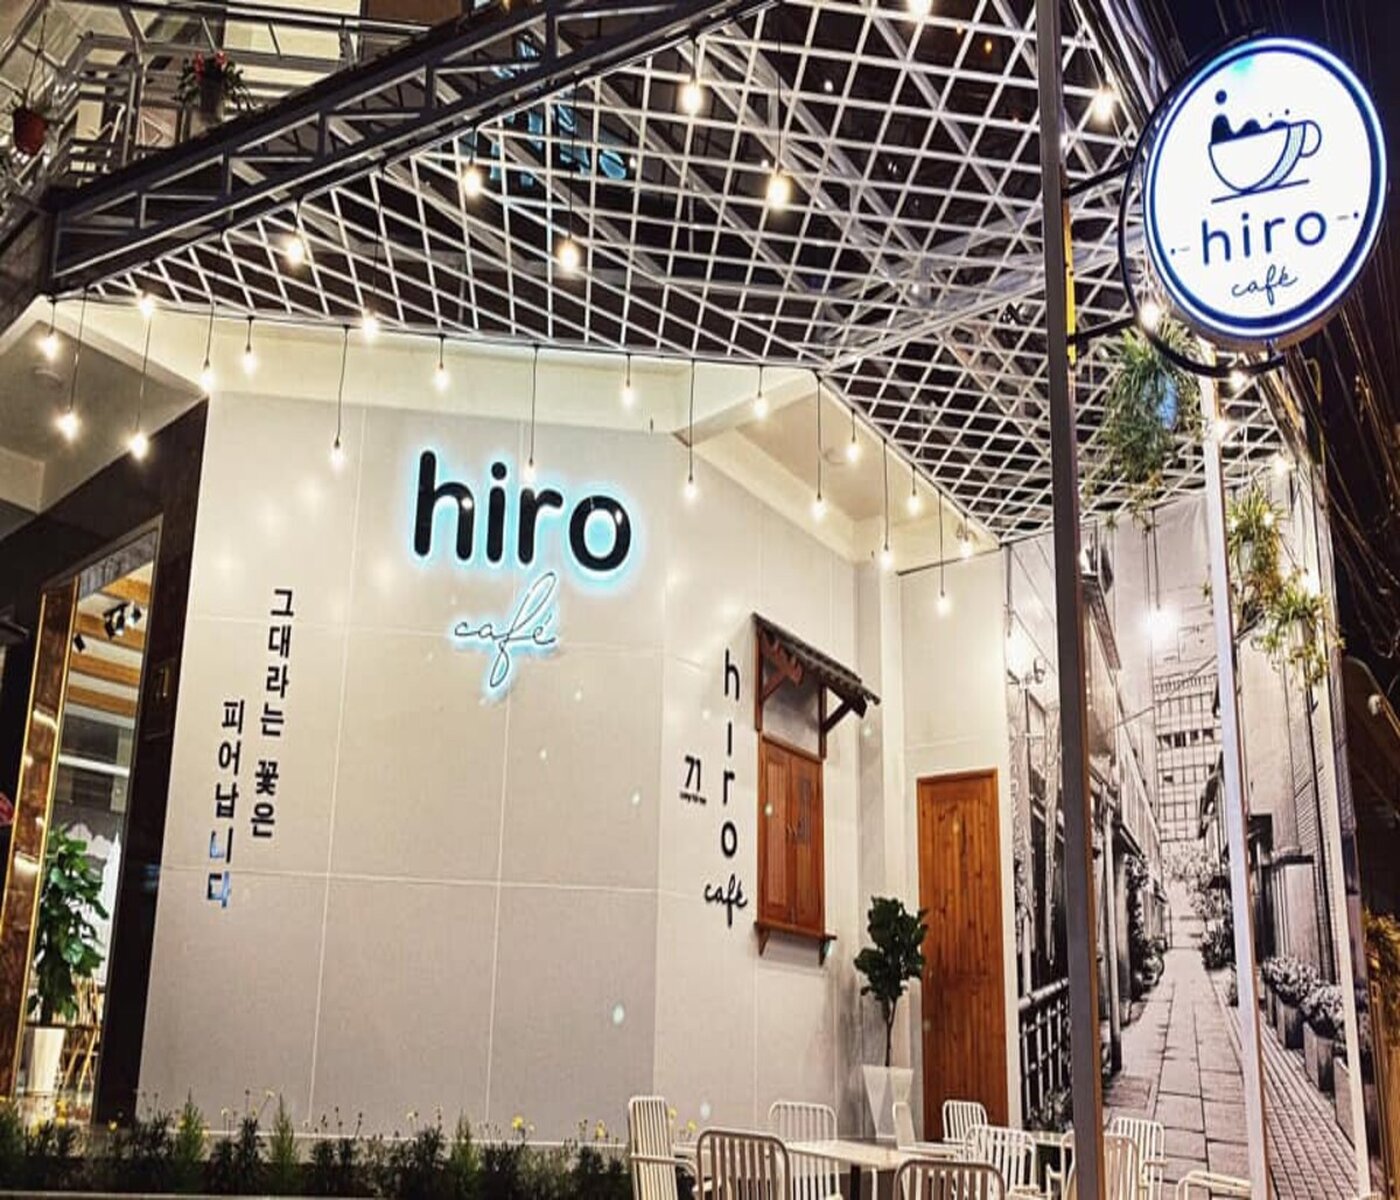 Hiro Cafe, góc nhỏ Nhật Bản trong lòng thành phố Bảo Lộc mộng mơ 4